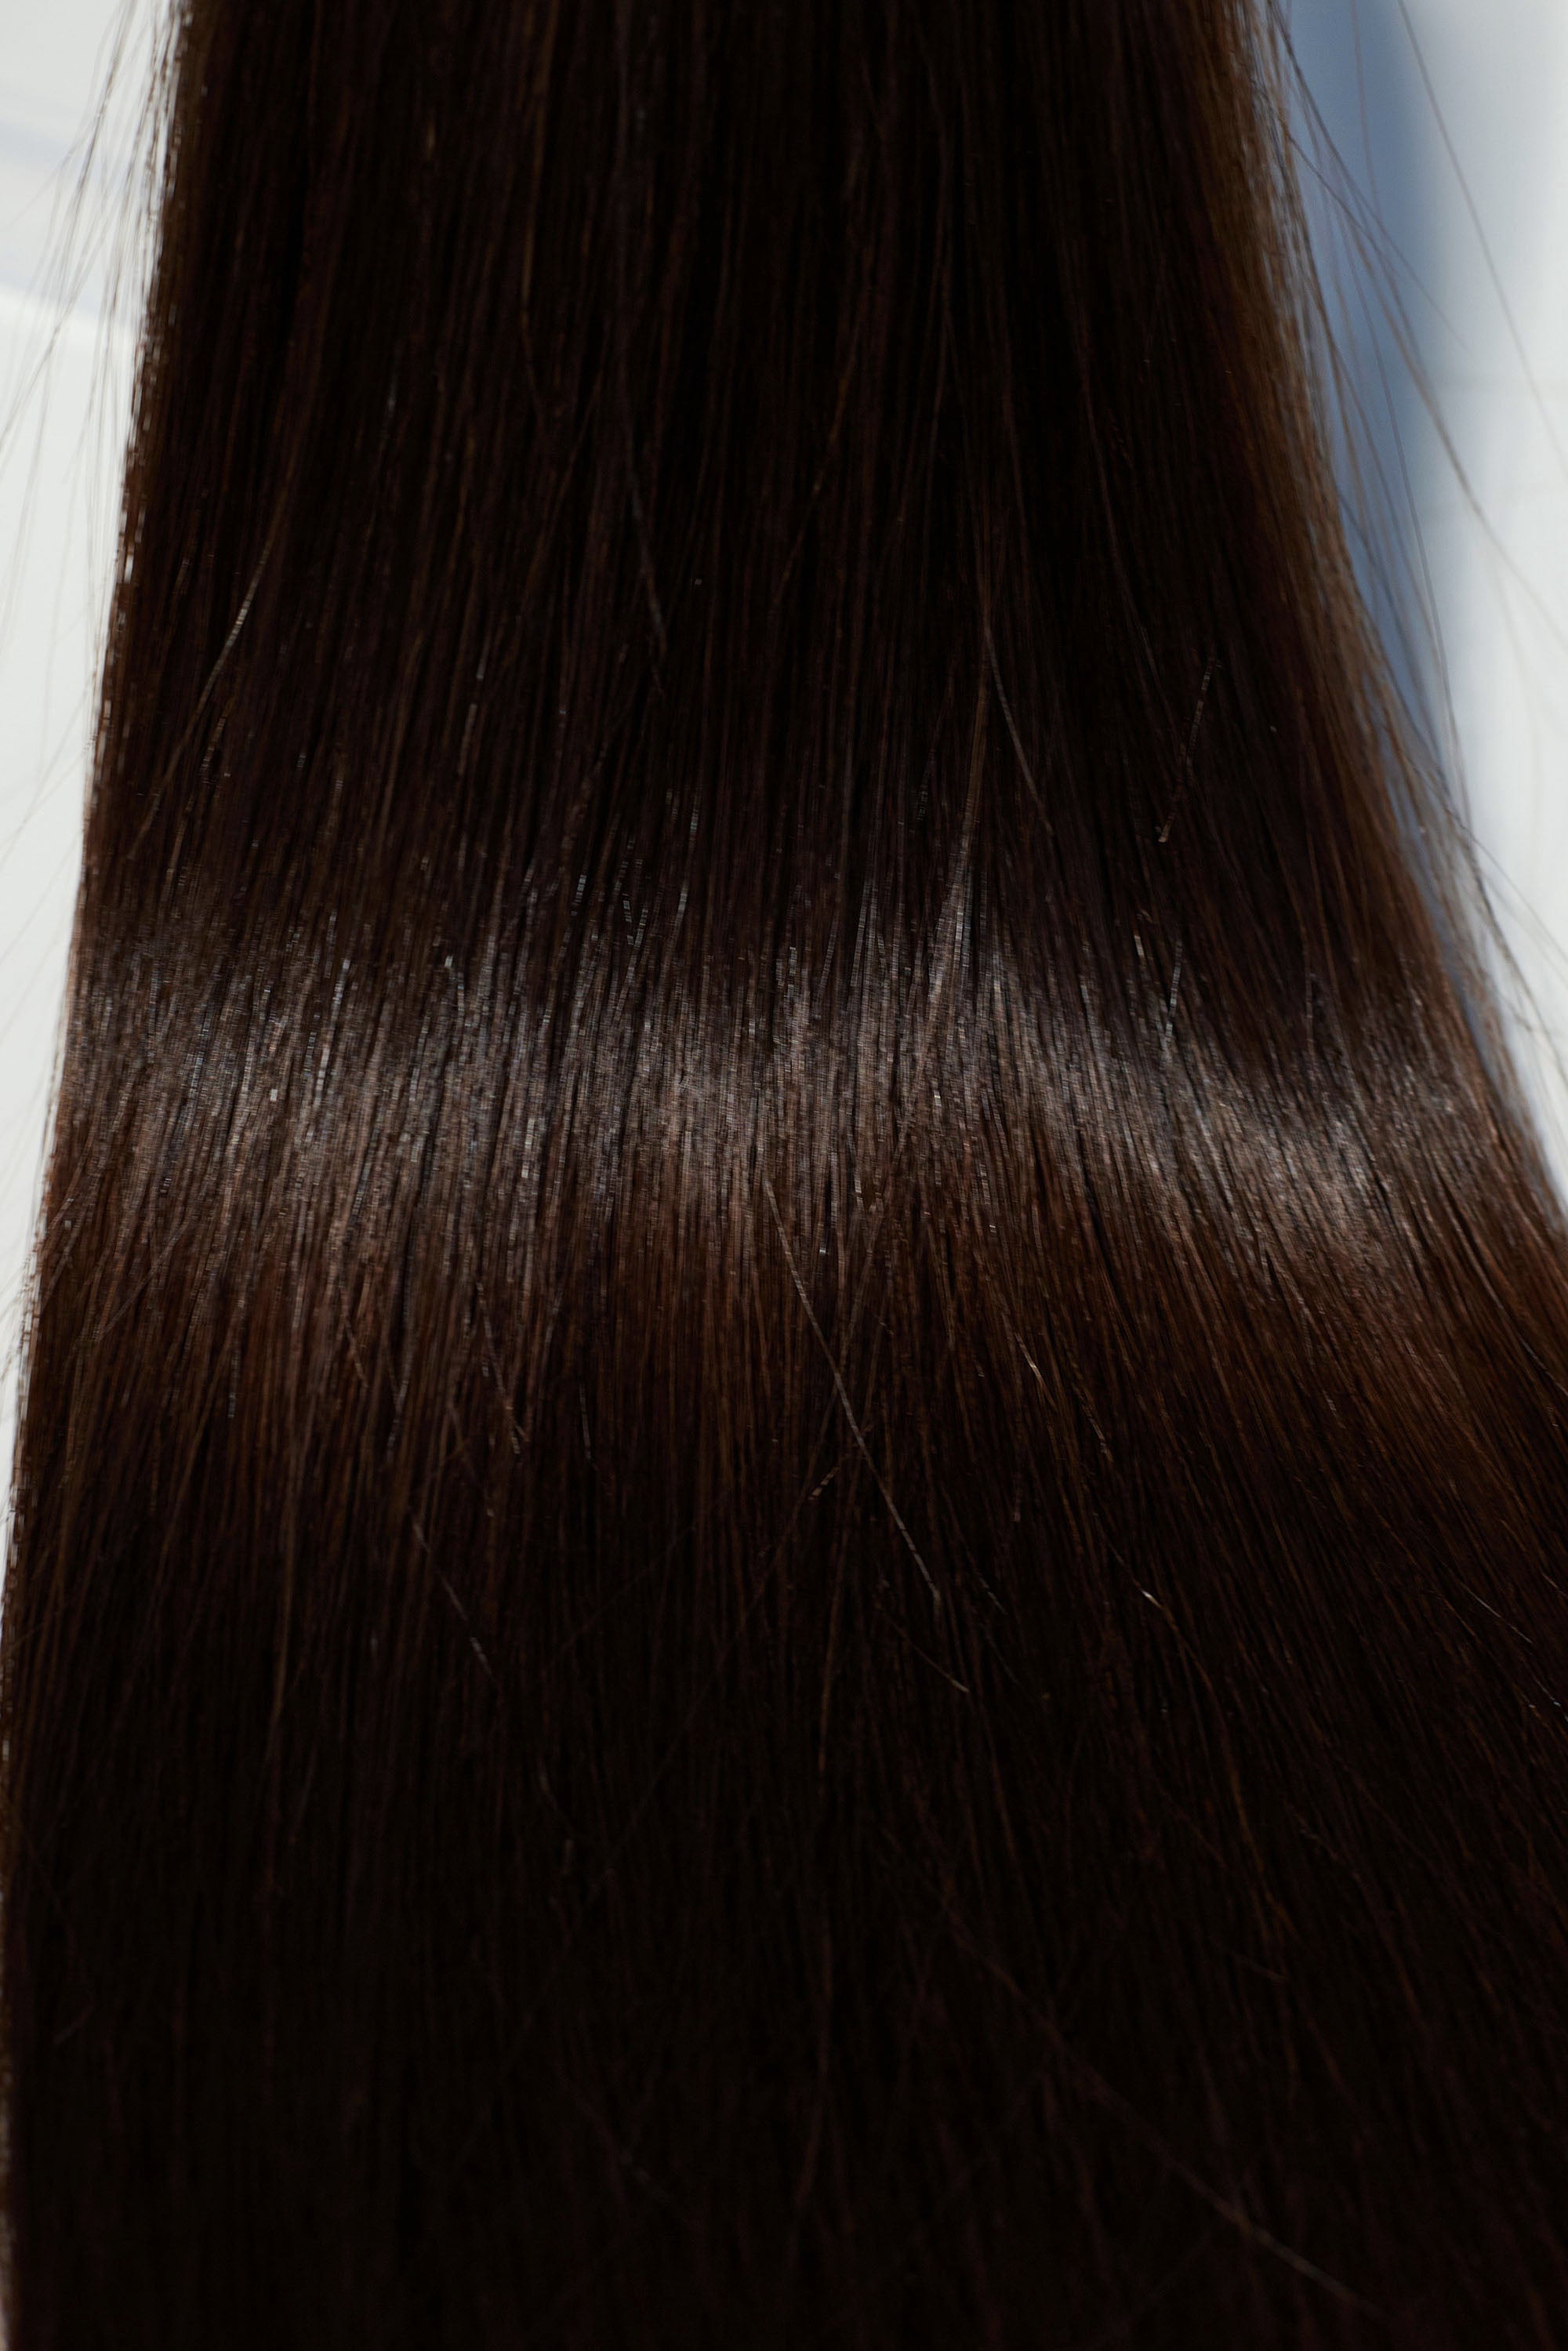 Behair professional Keratin Tip "Premium" 22" (55cm) Natural Straight Dark Coffee Brown #2 - 25g (Micro - 0.5g each pcs) hair extensions